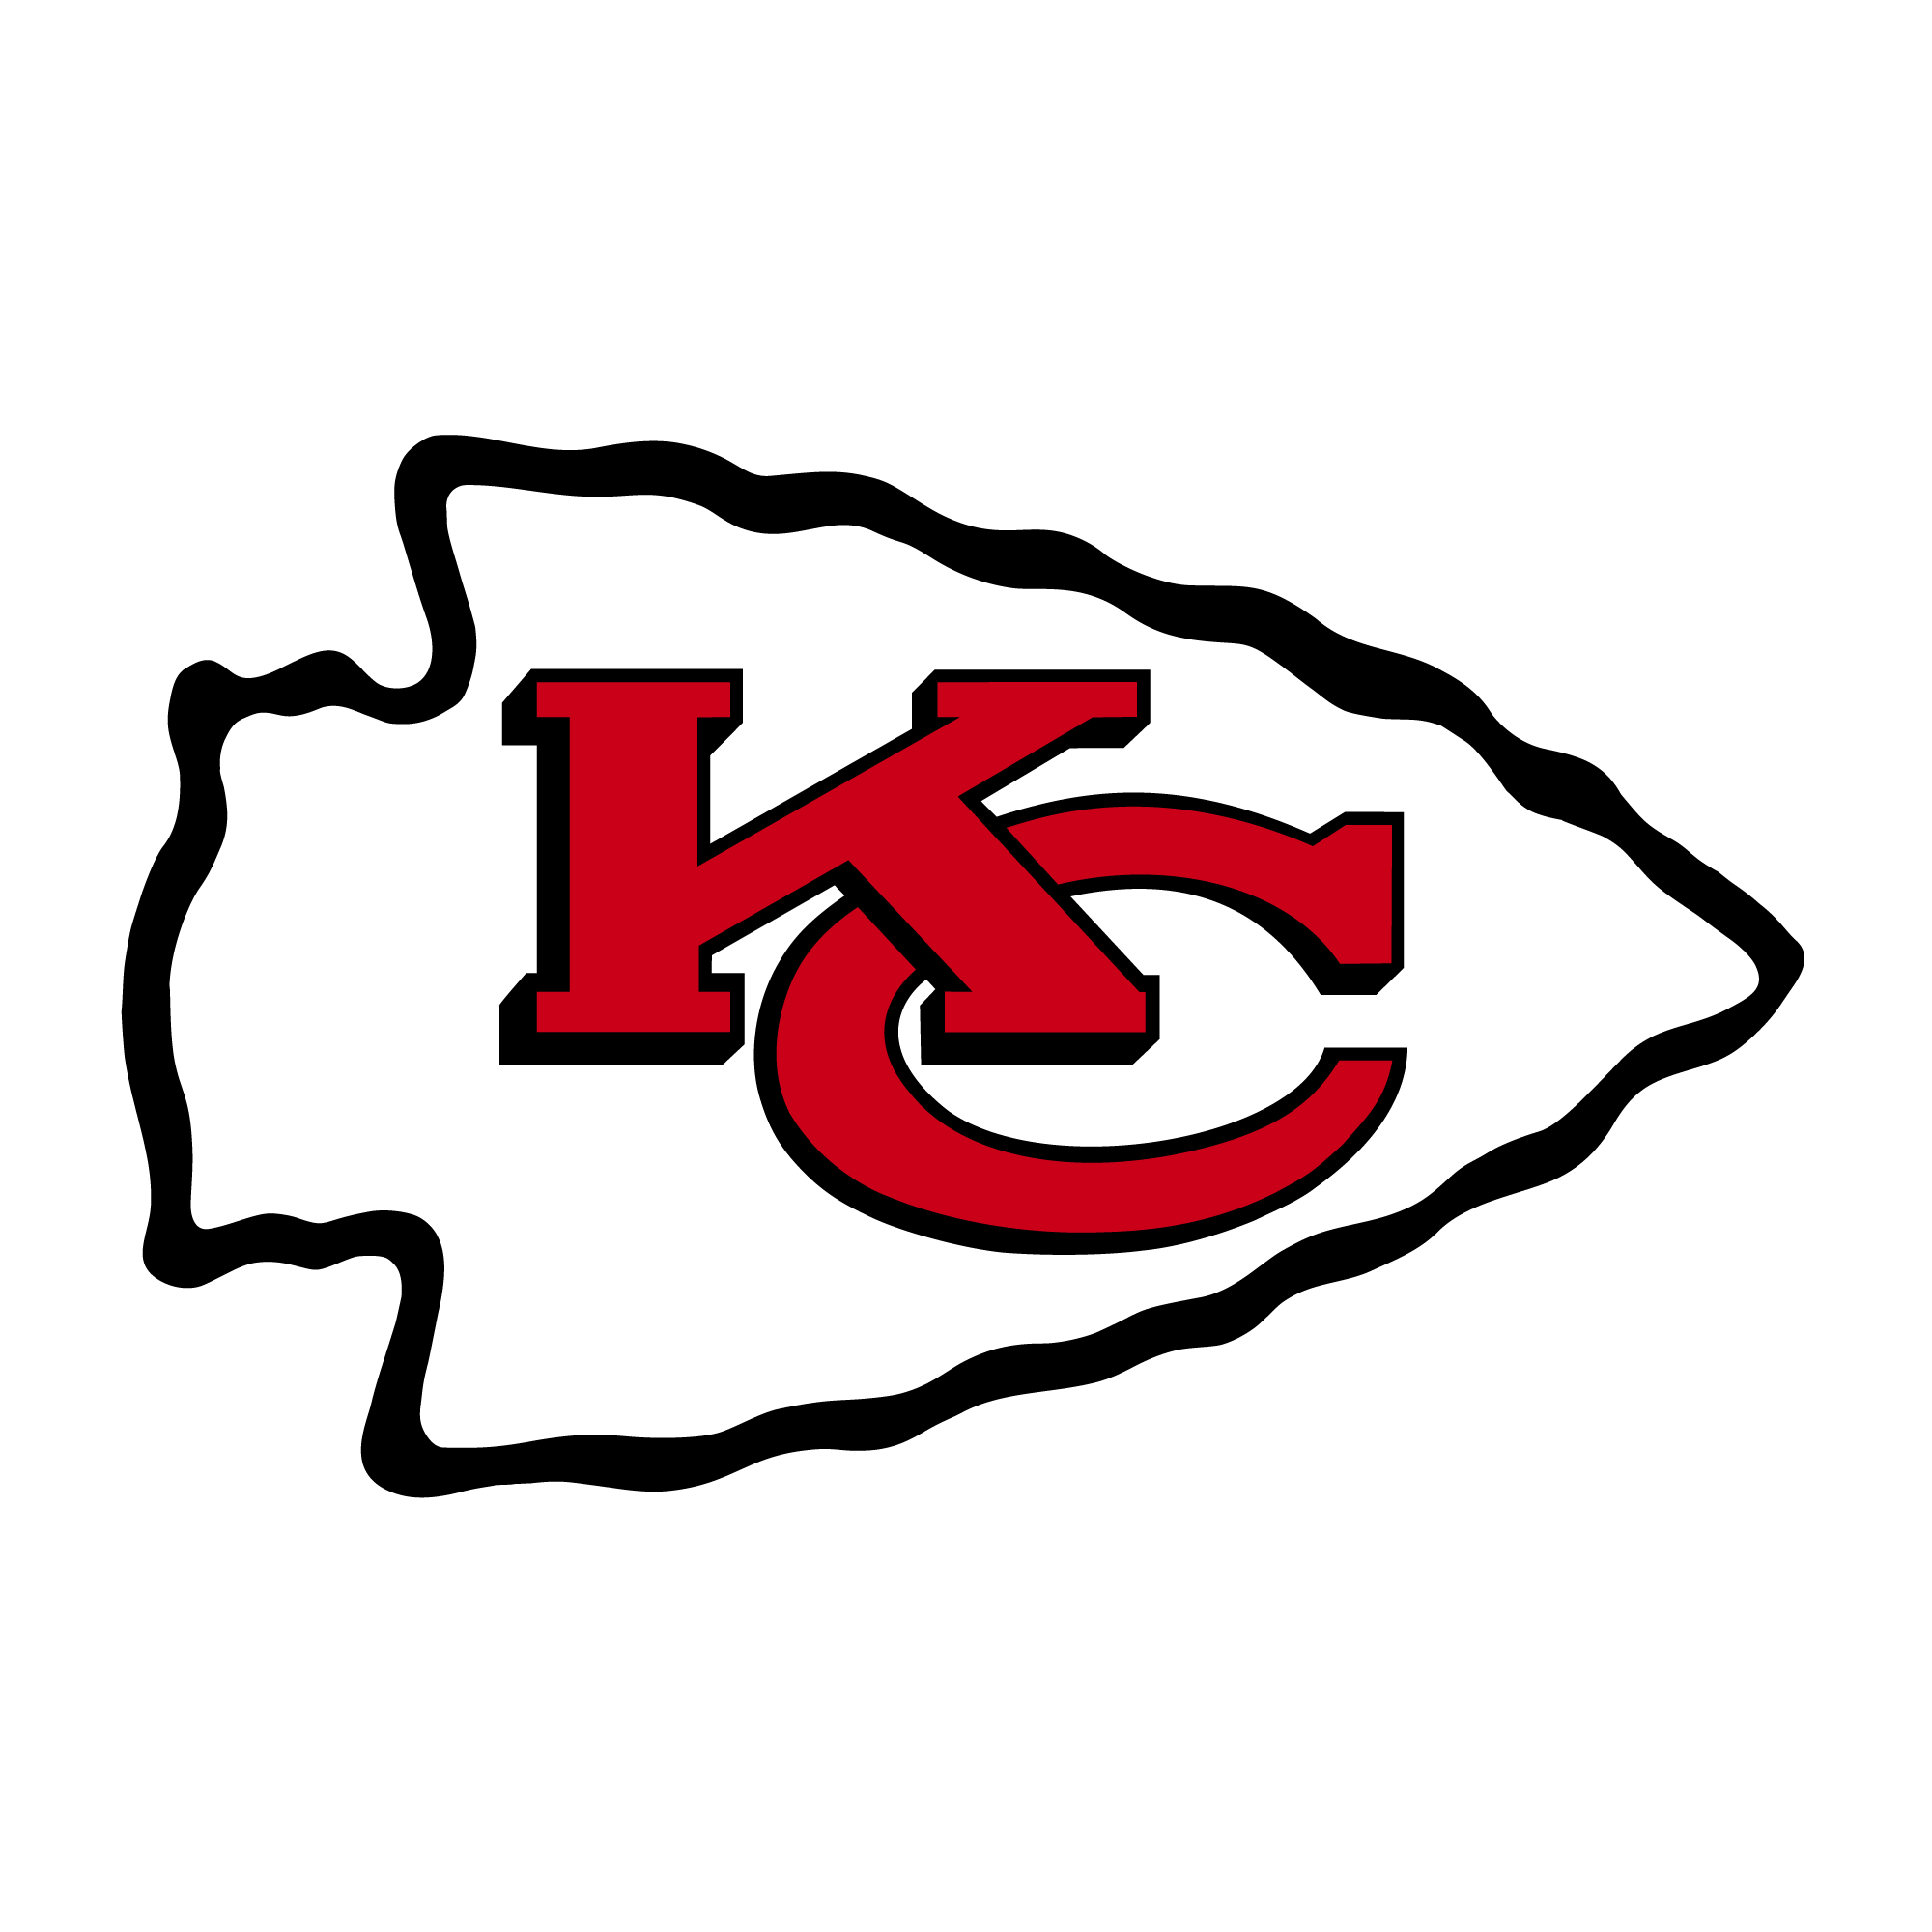 Kansas City Chiefs News, Scores, Statistics - Football NFL